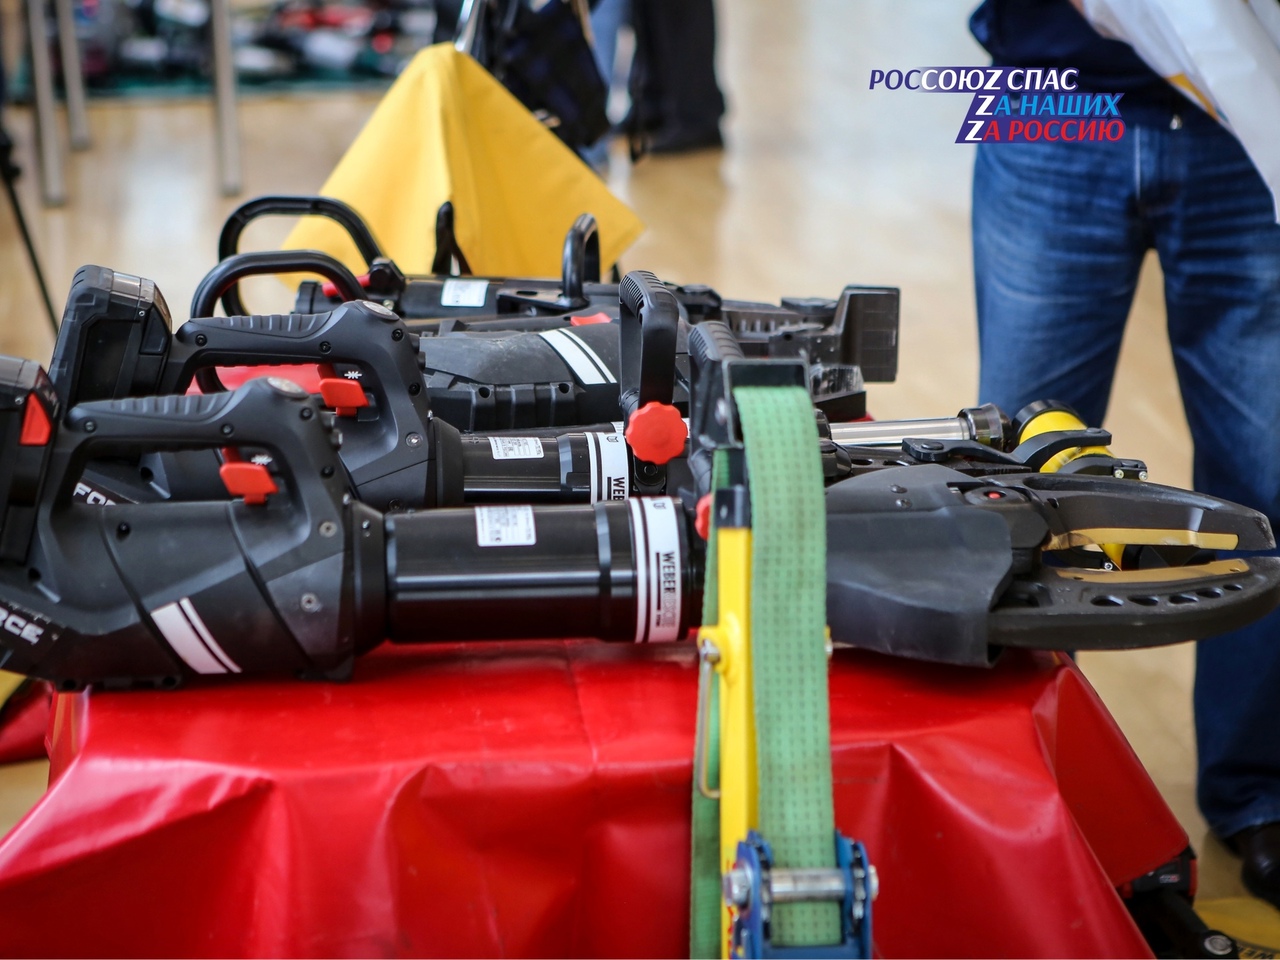 Одним из важных событий IV Всероссийская Конференция аварийно-спасательных служб и формирований стала выставка спецтехники и оборудования